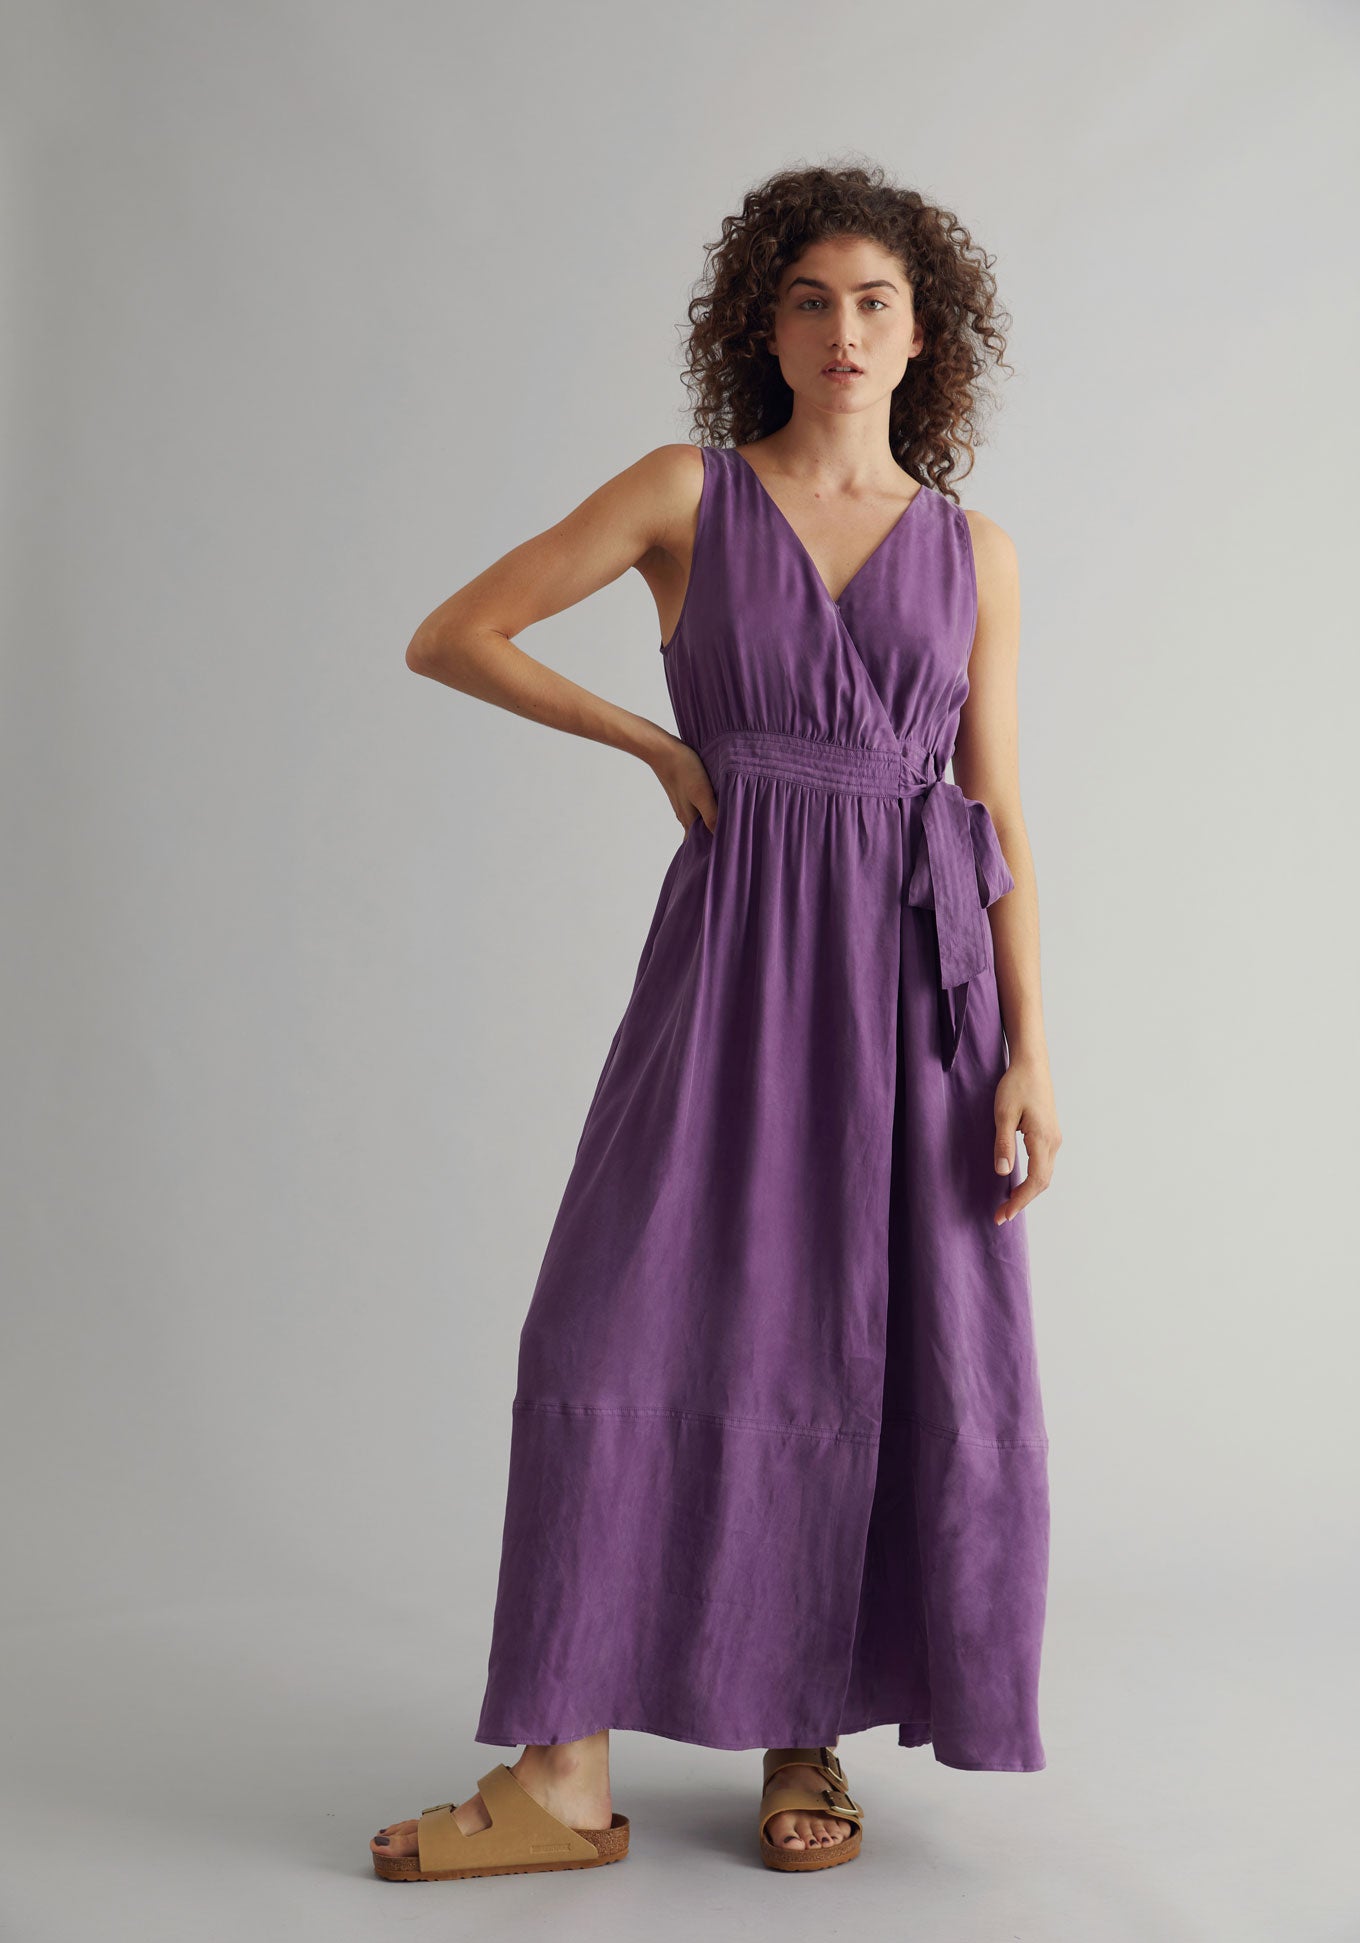 MIKA Dress - Cupro Viscose Purple, SIZE 4 / UK 14 / EUR 42